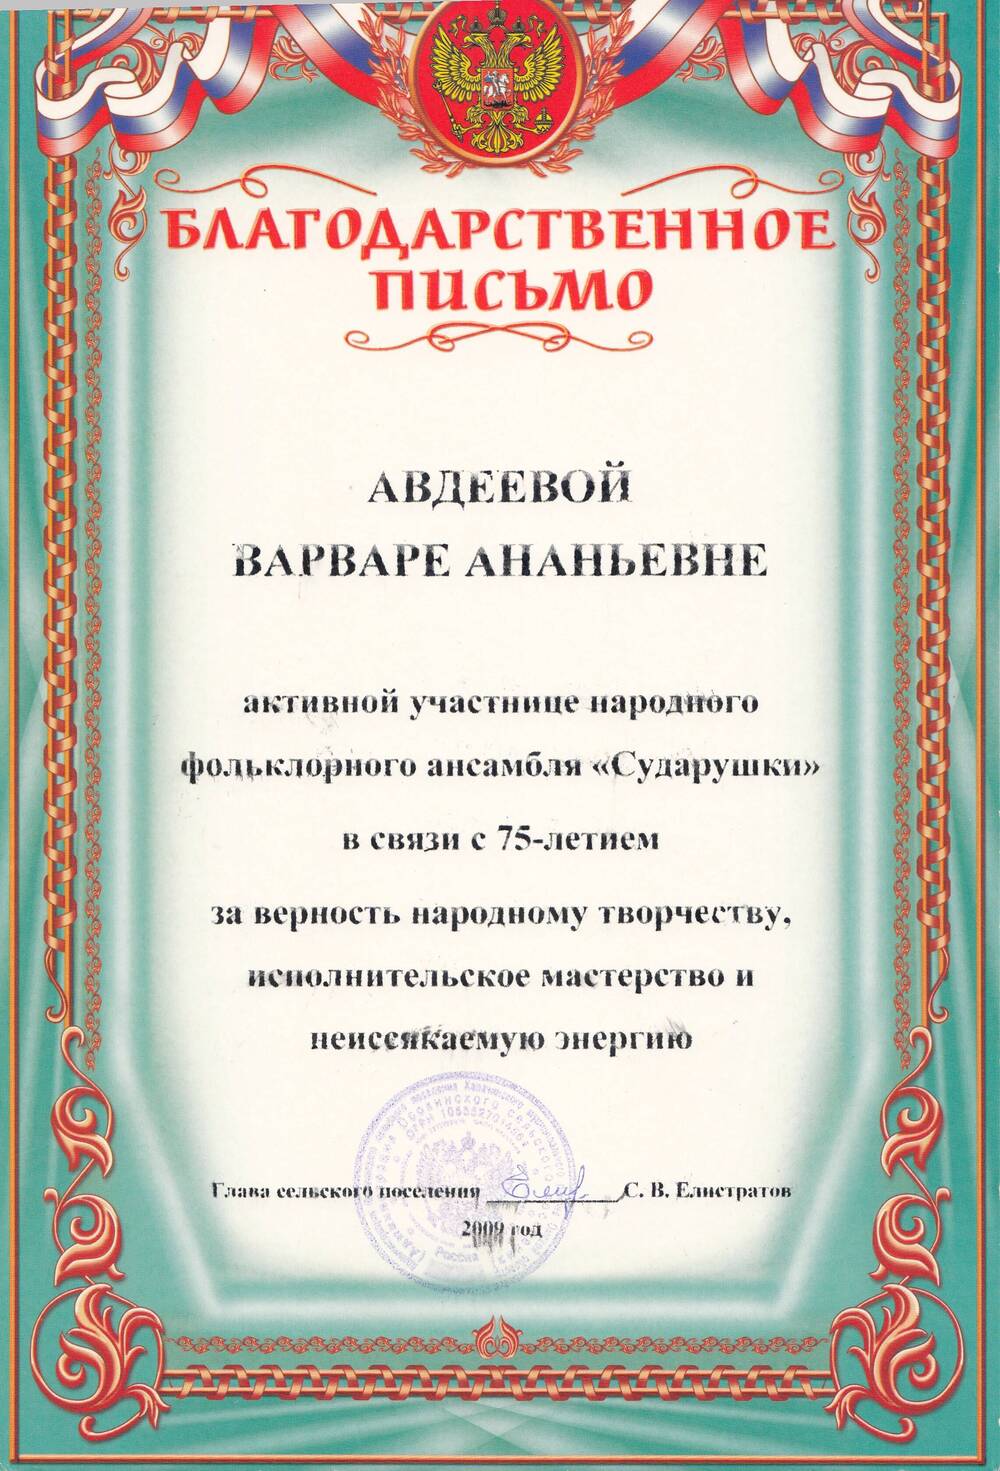 Благодарственное письмо активной  участнице народного фольклорного ансамбля Сударушки Авдеевой  Варваре Ананьевне